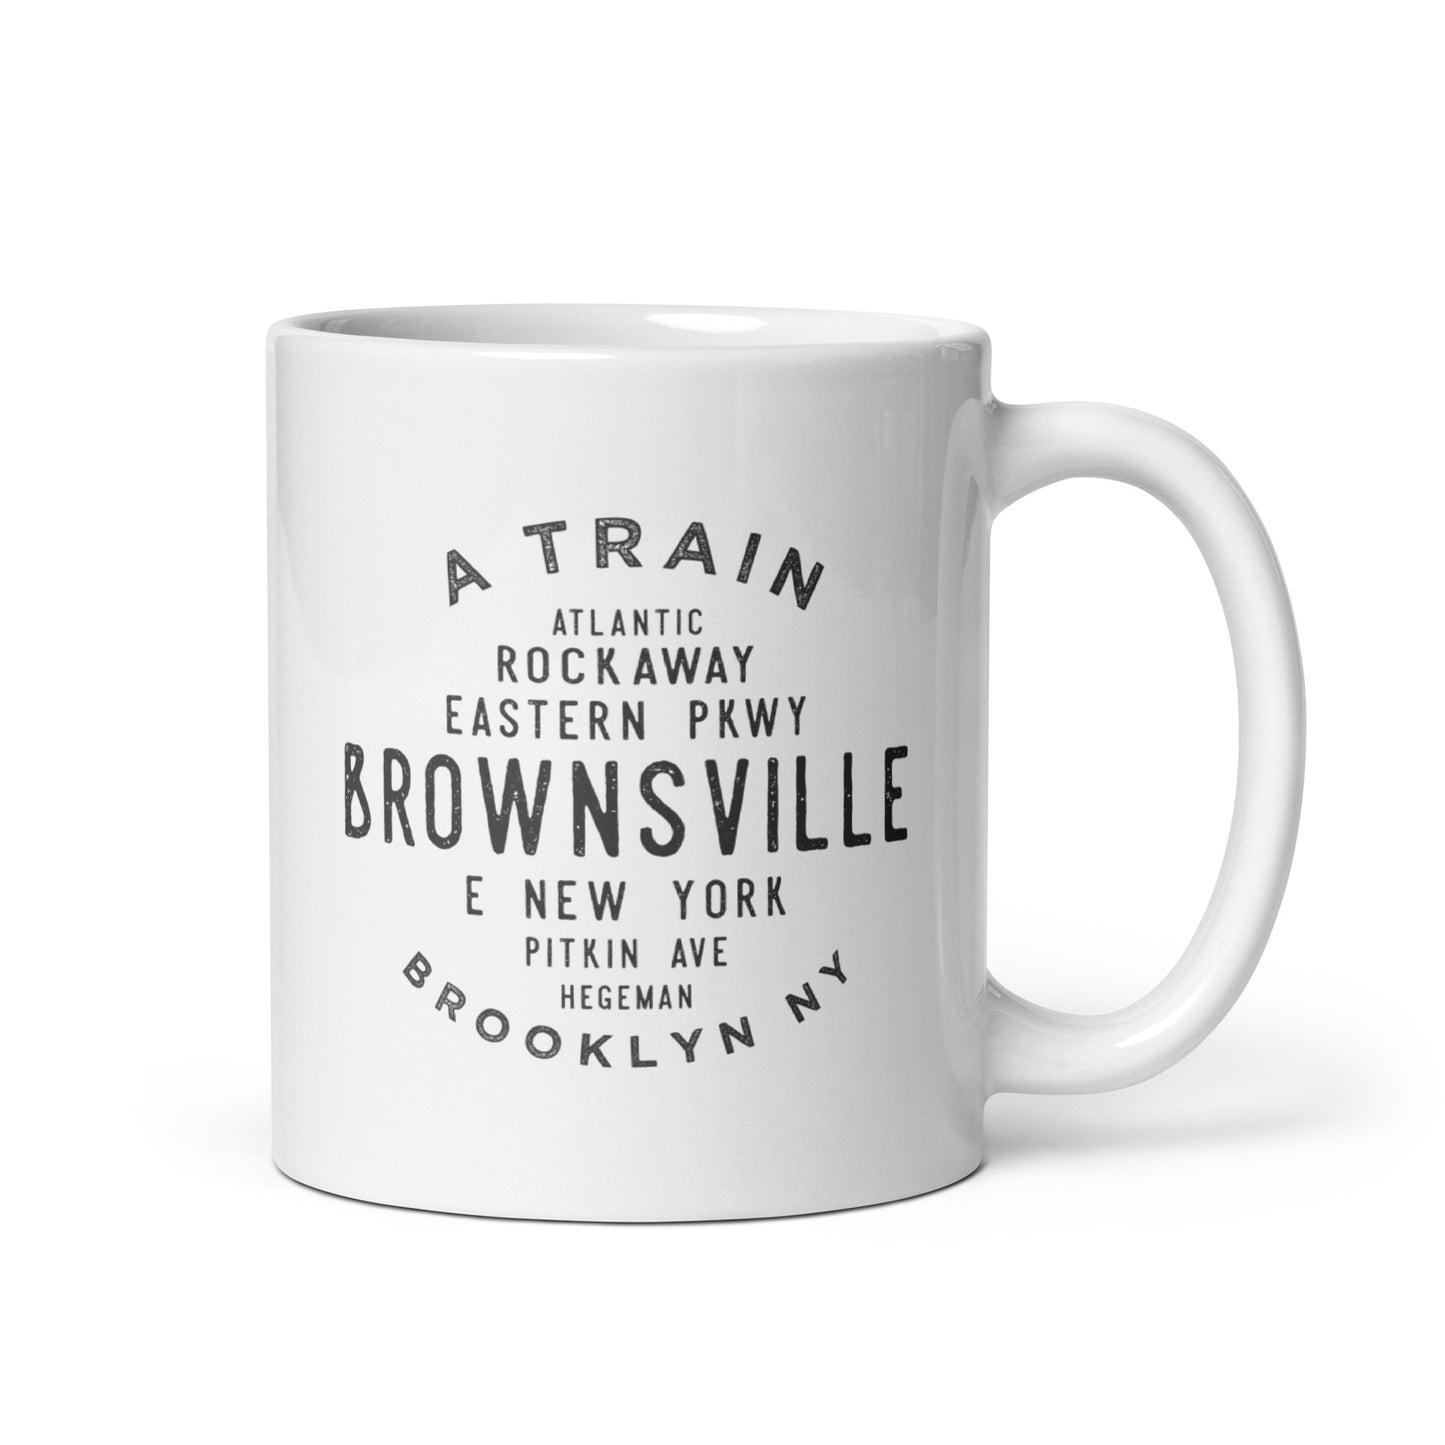 Brownsville Brooklyn NYC Mug